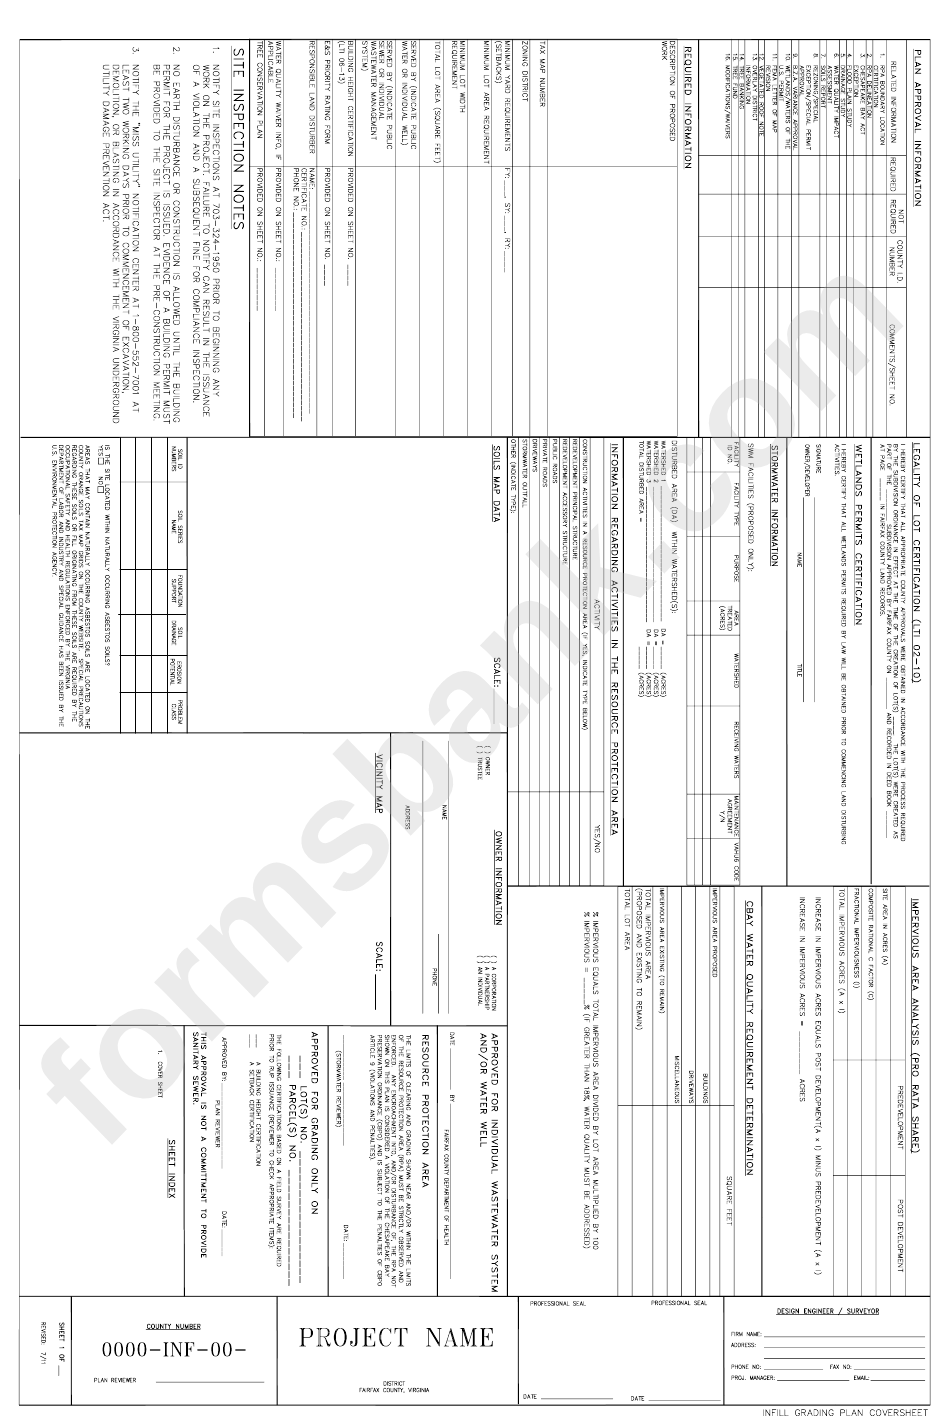 Infill Grading Plan Cover Sheet - Fairfax County, Virginia